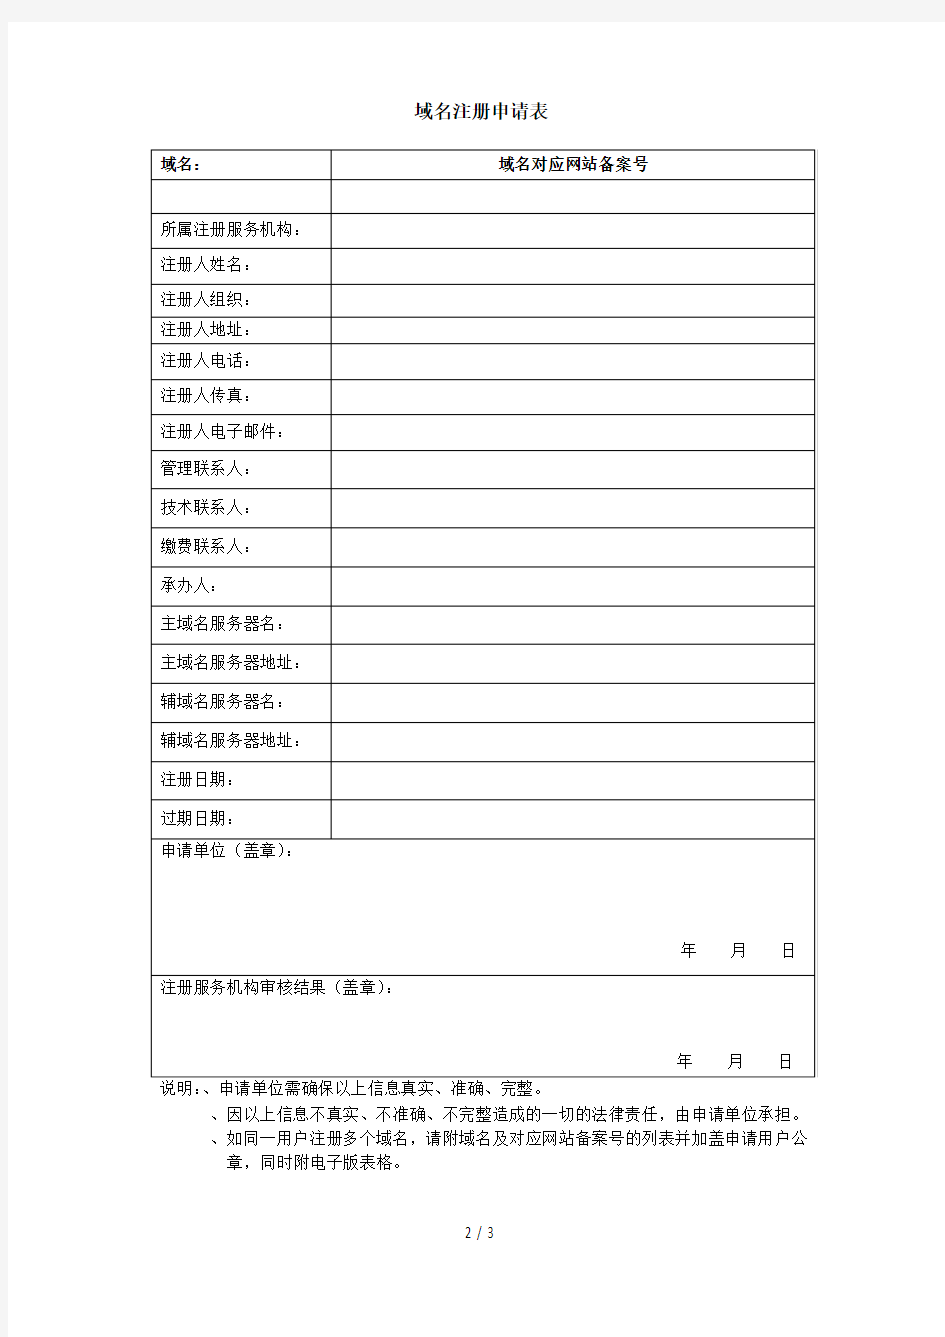 中英文国内域名注册规则